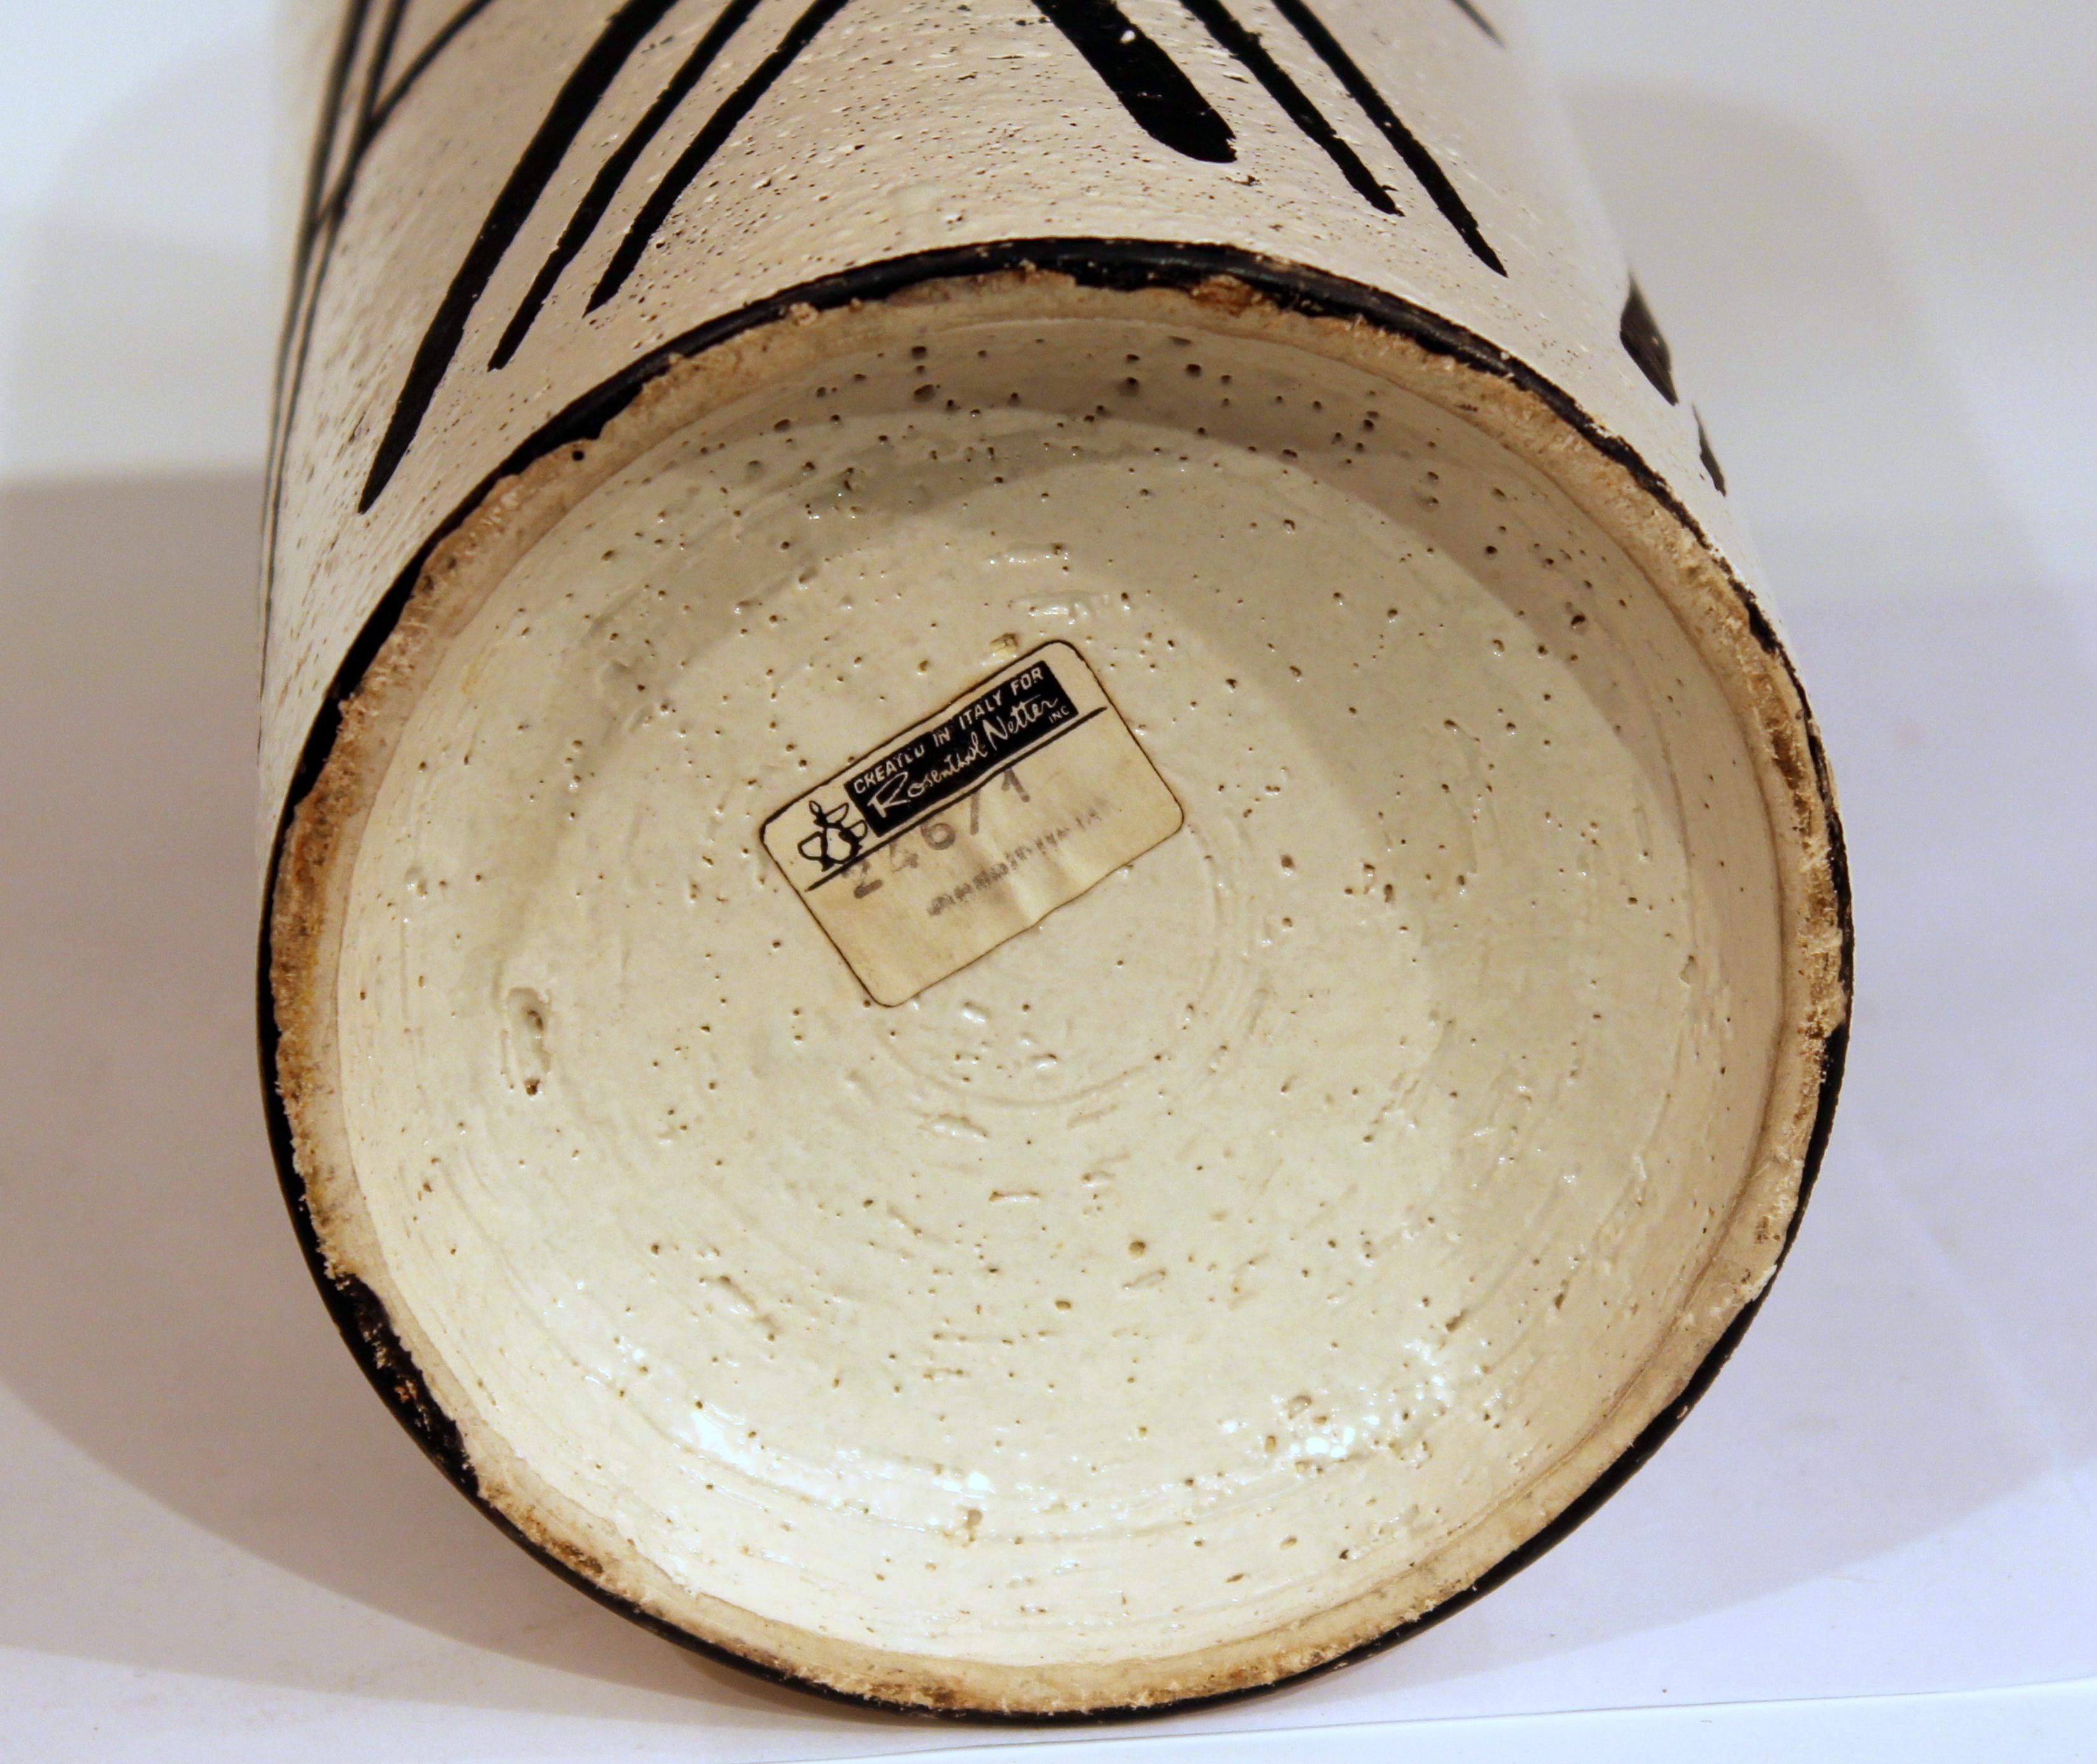 Mid-20th Century Bitossi Italian Pottery Raymor Rosenthal-Netter Vase Vintage Londi Black & White